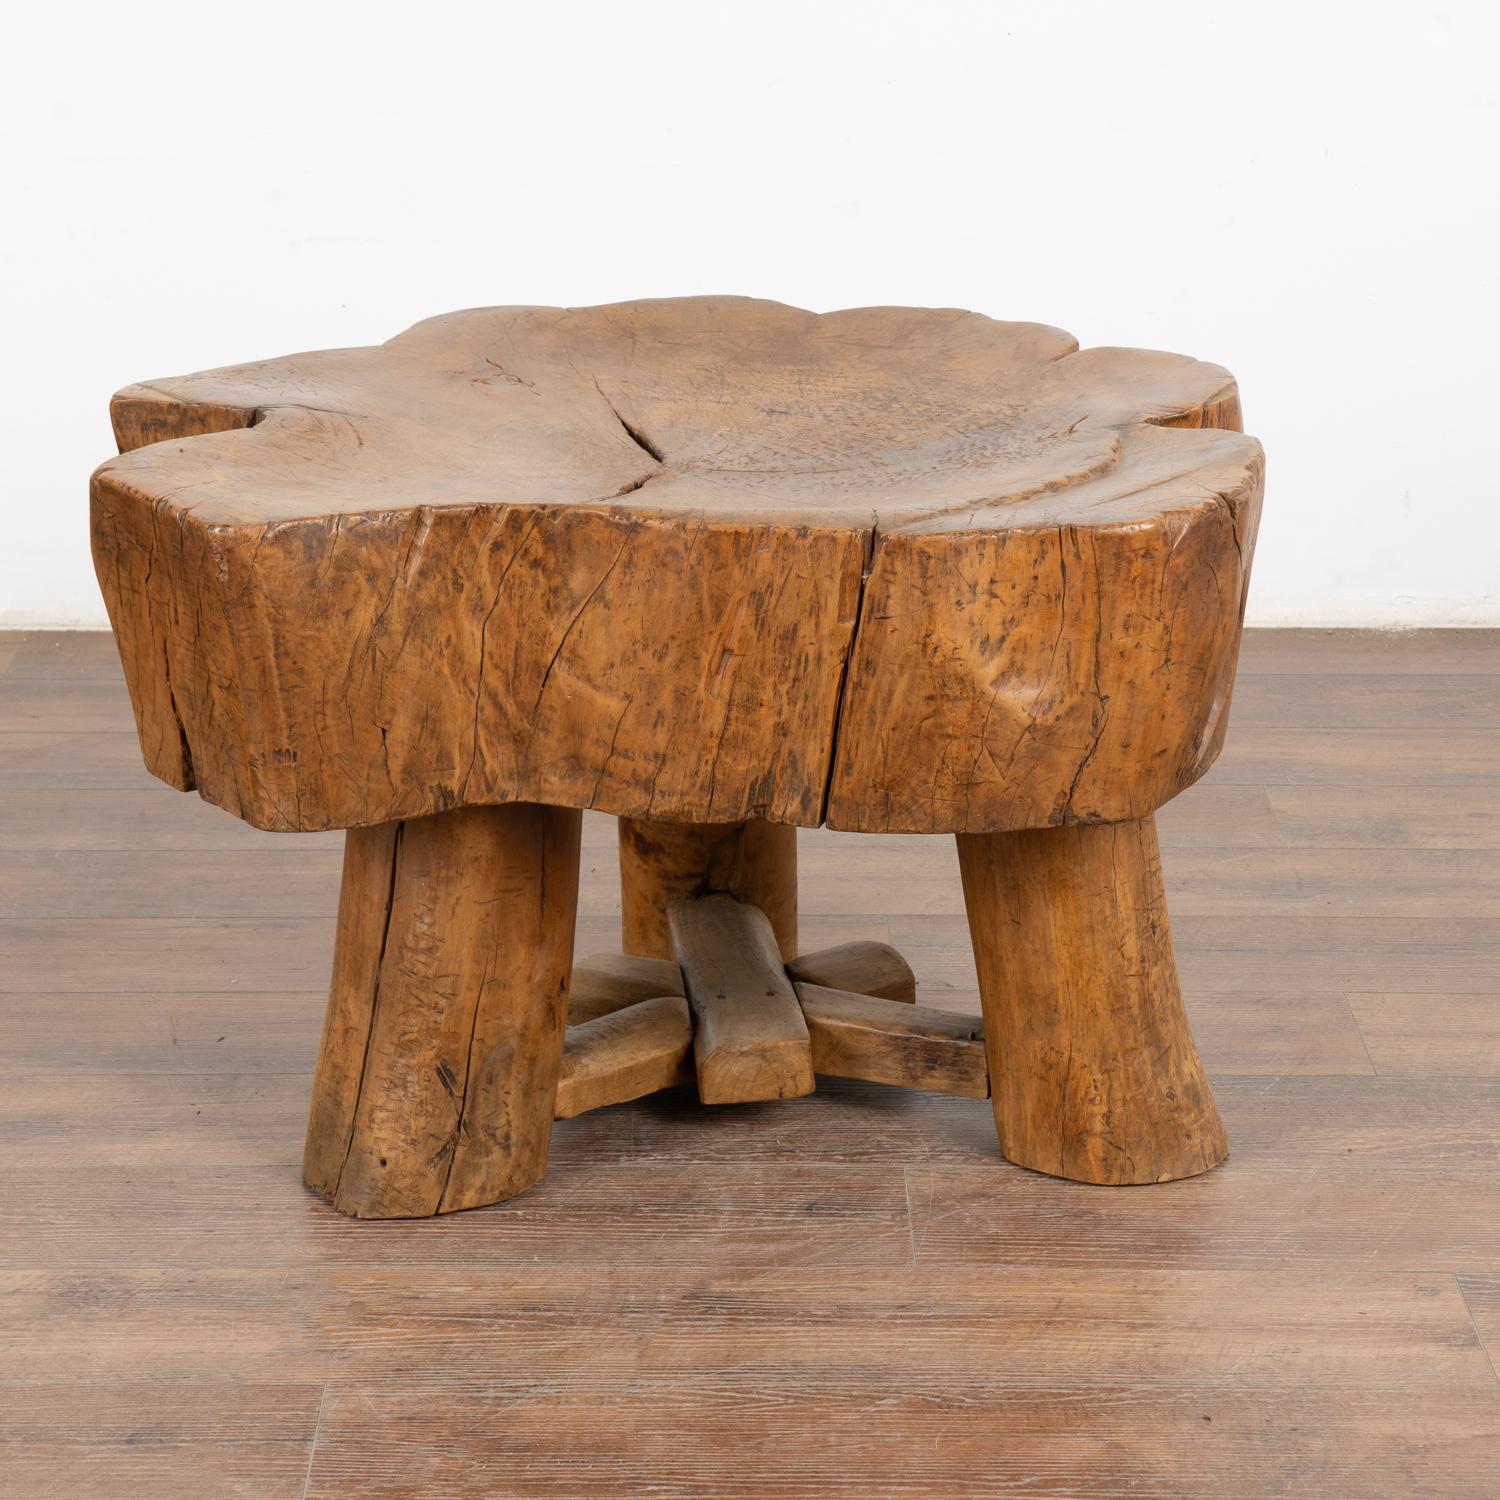 L'incroyable attrait de cette impressionnante table basse provient du bois lui-même qui est vieilli, épais et robuste. Chaque fissure, entaille et séparation ajoute à la profondeur du caractère de cette table rustique avec une forte sensation